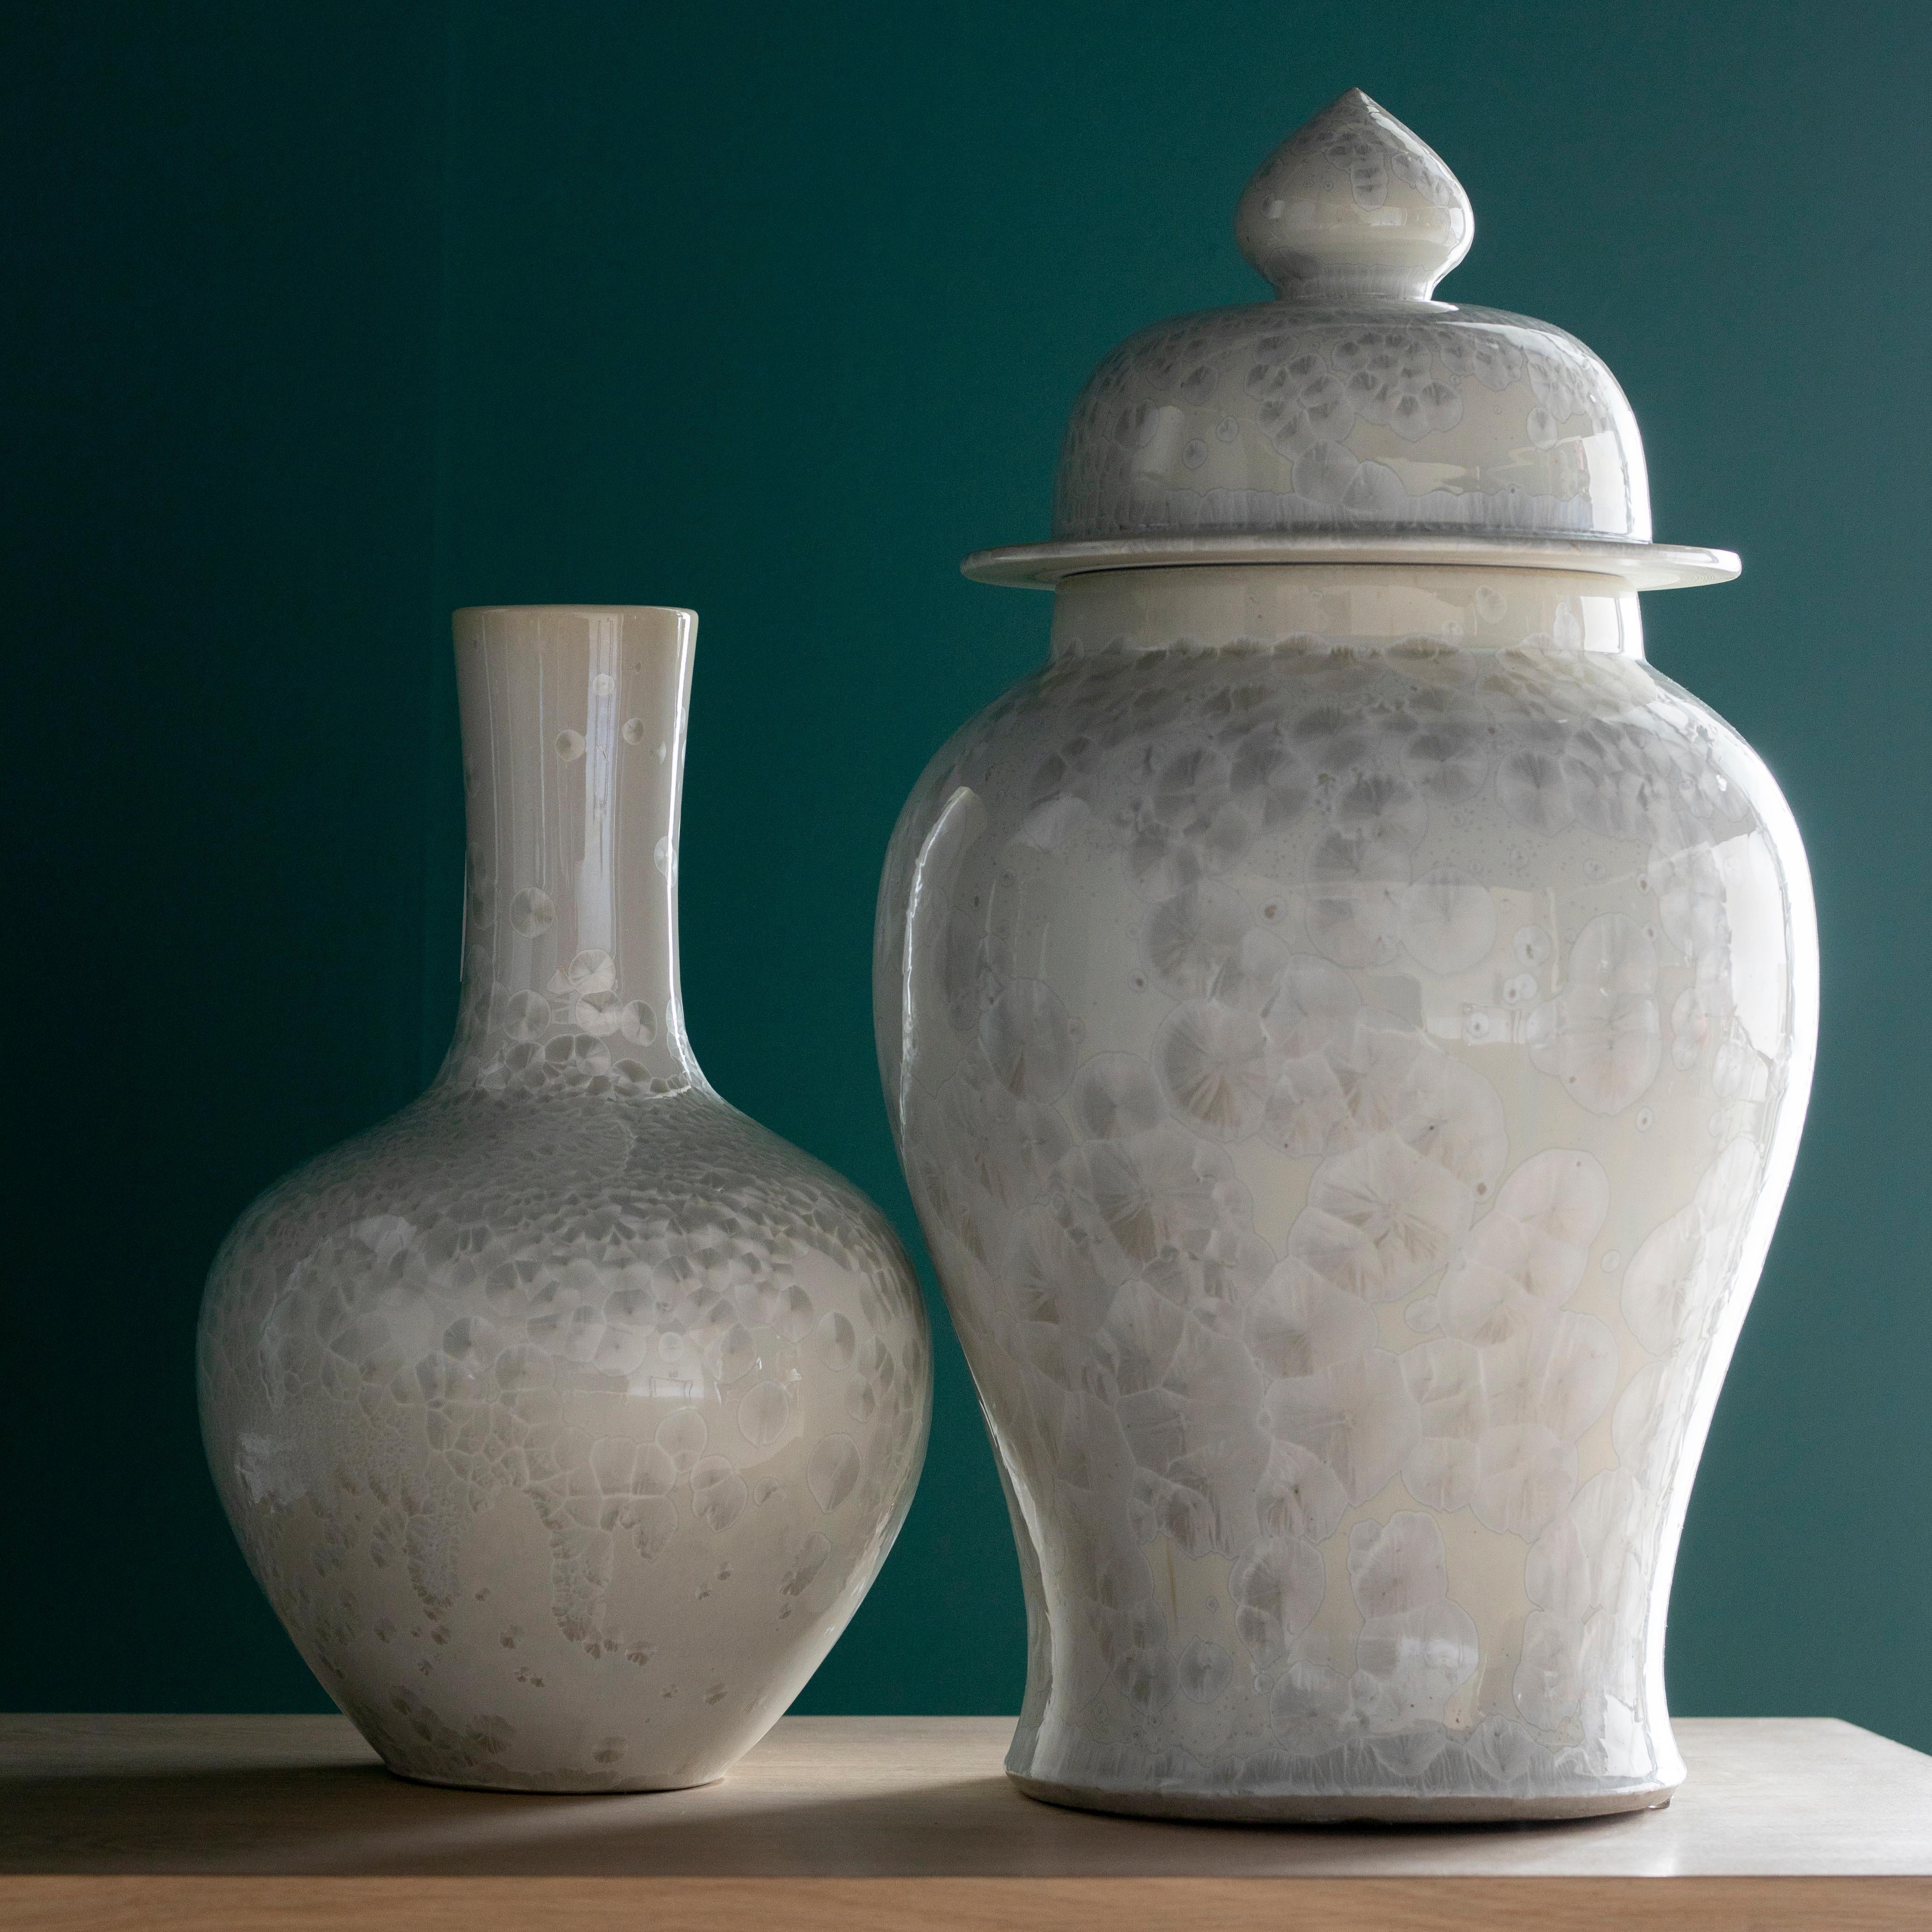 Set/Tang Vase en porcelaine et pot Sunce avec couvercle, Collectional par Lusitanus Home.

Vase et porto imperméables en porcelaine chinoise véritable avec couvercle, produits à la main selon des méthodes traditionnelles. La finition en nacre rend